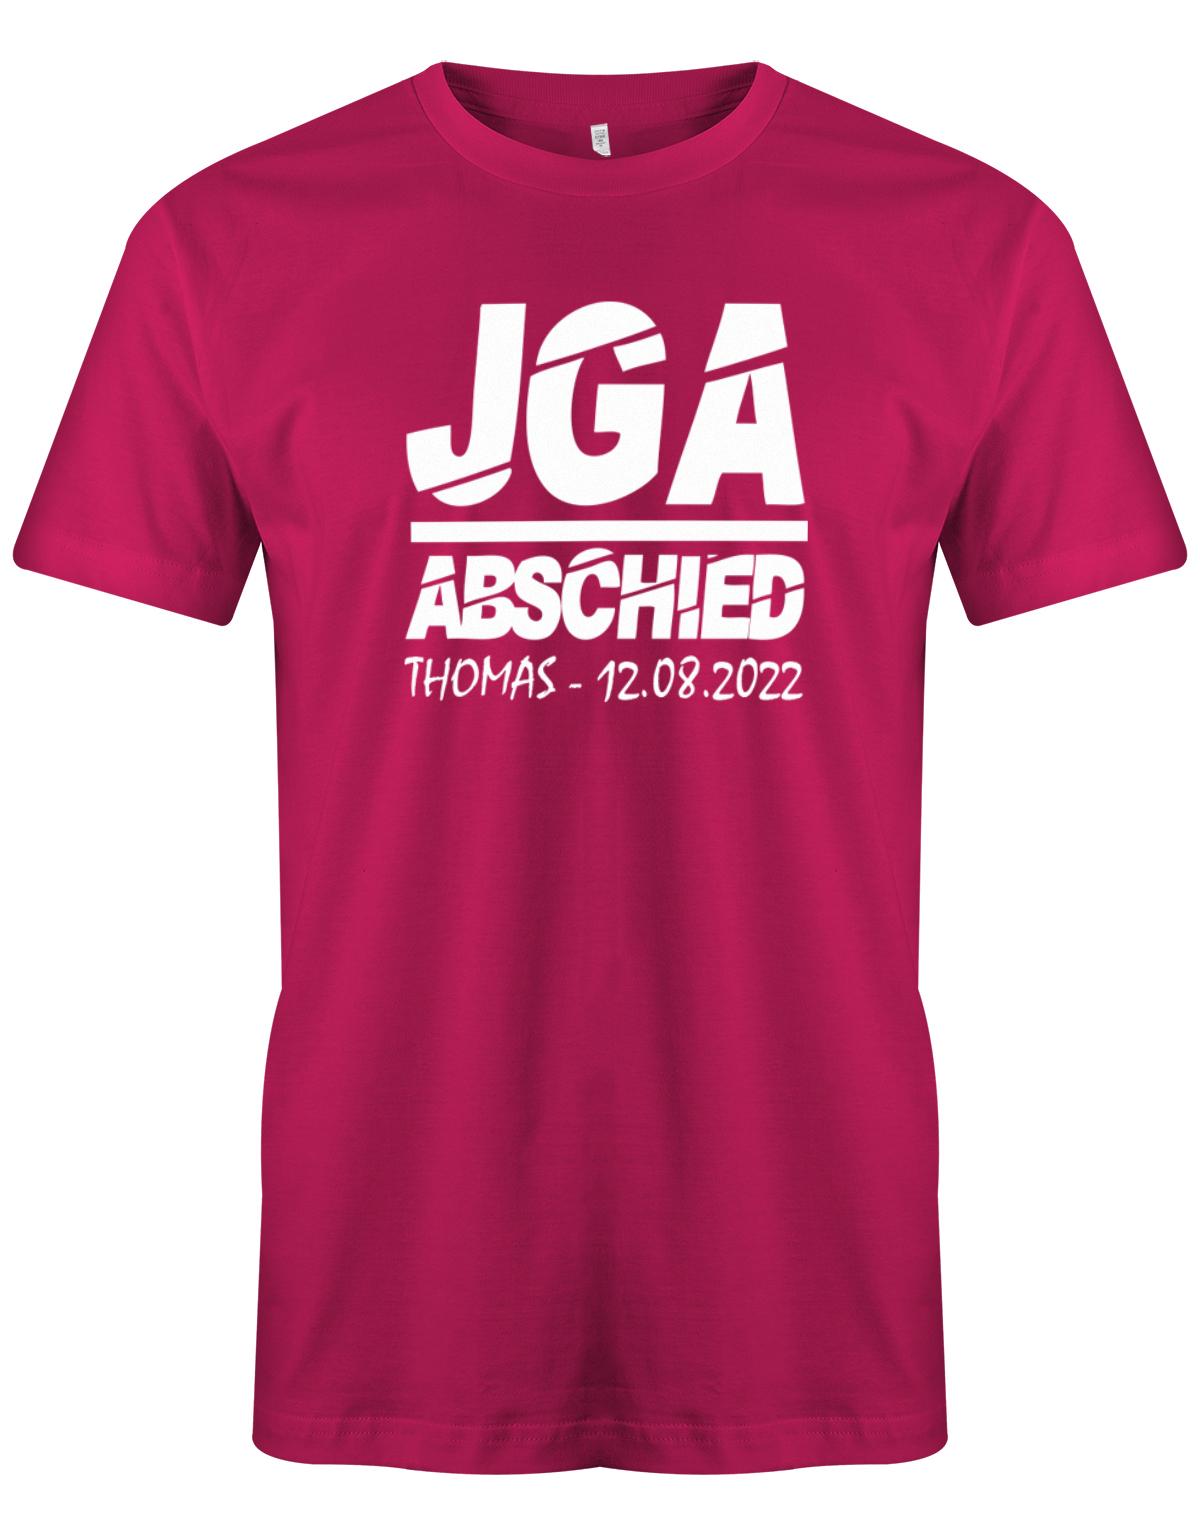 JGA-Abschied-mit-Name-und-Datum-Herren-Shirt-Sorbet